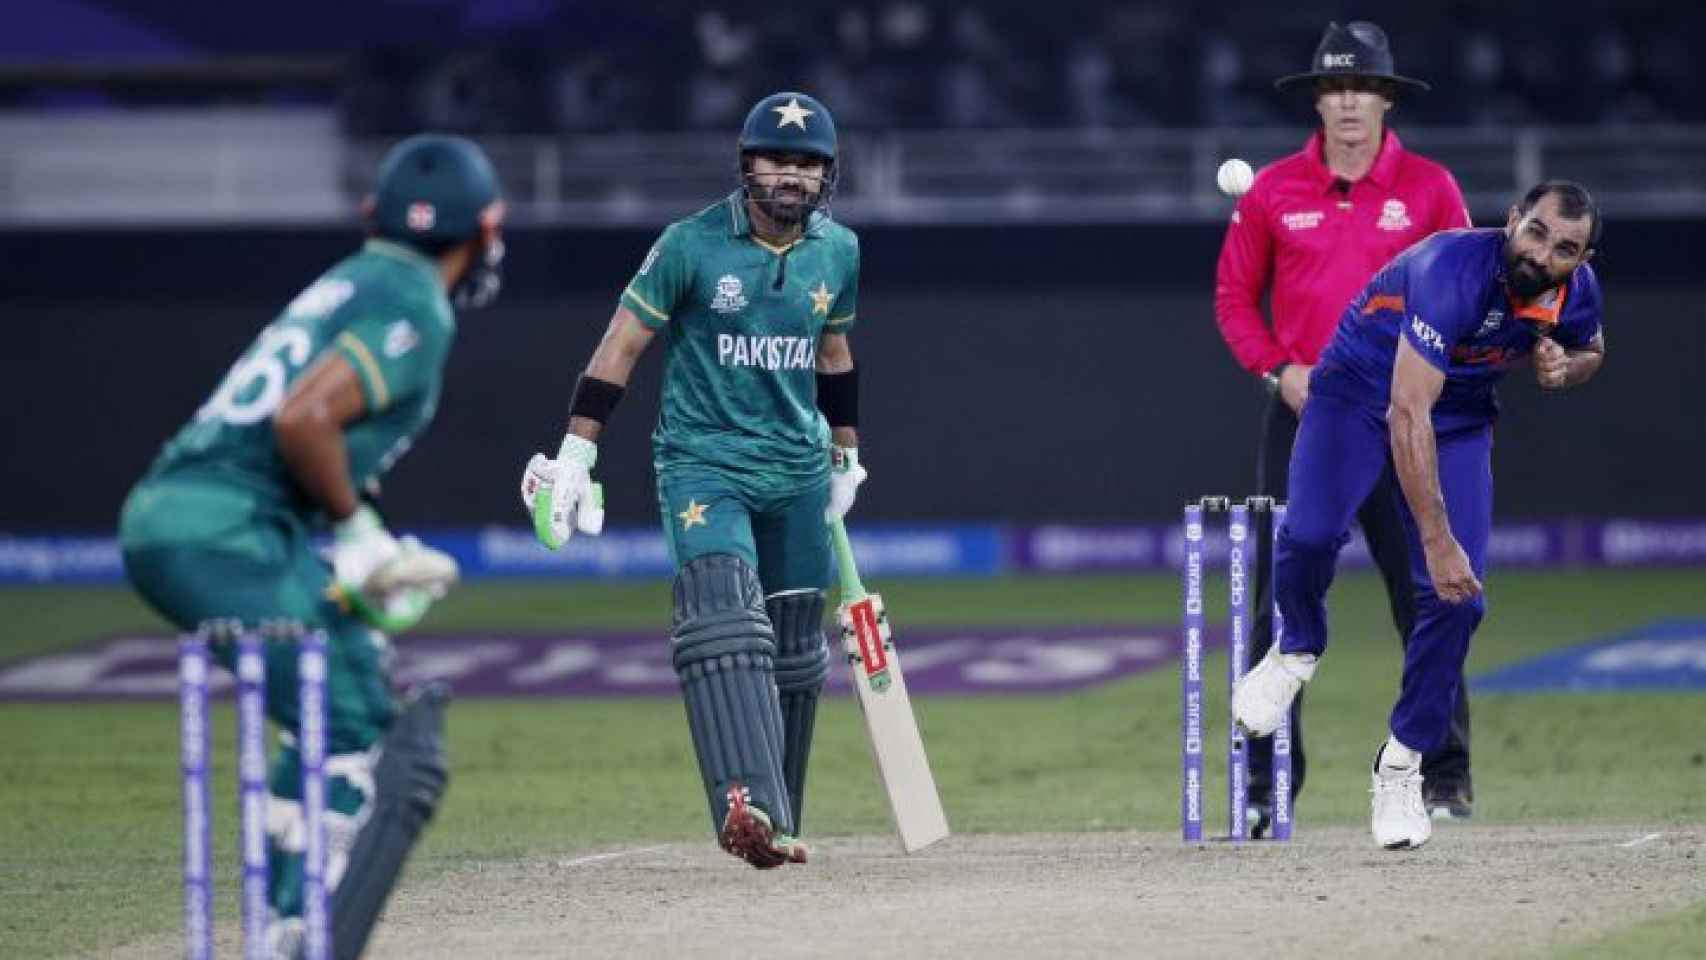 Partido de críquet del equipo de Pakistán